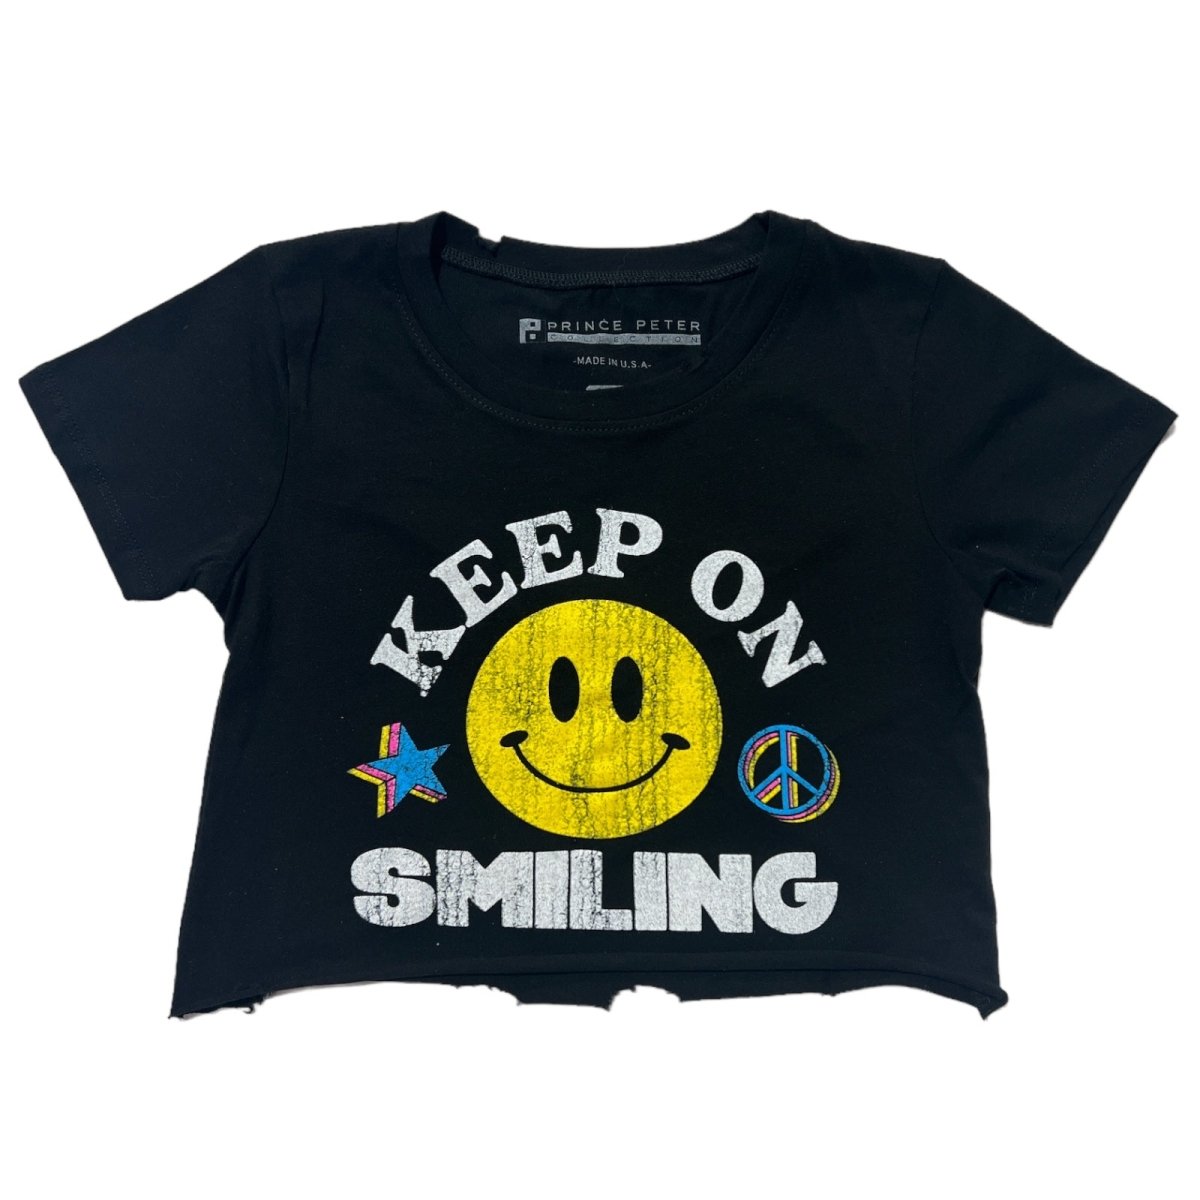 KEEP ON SMILING CROP TSHIRT - PRINCE PETER